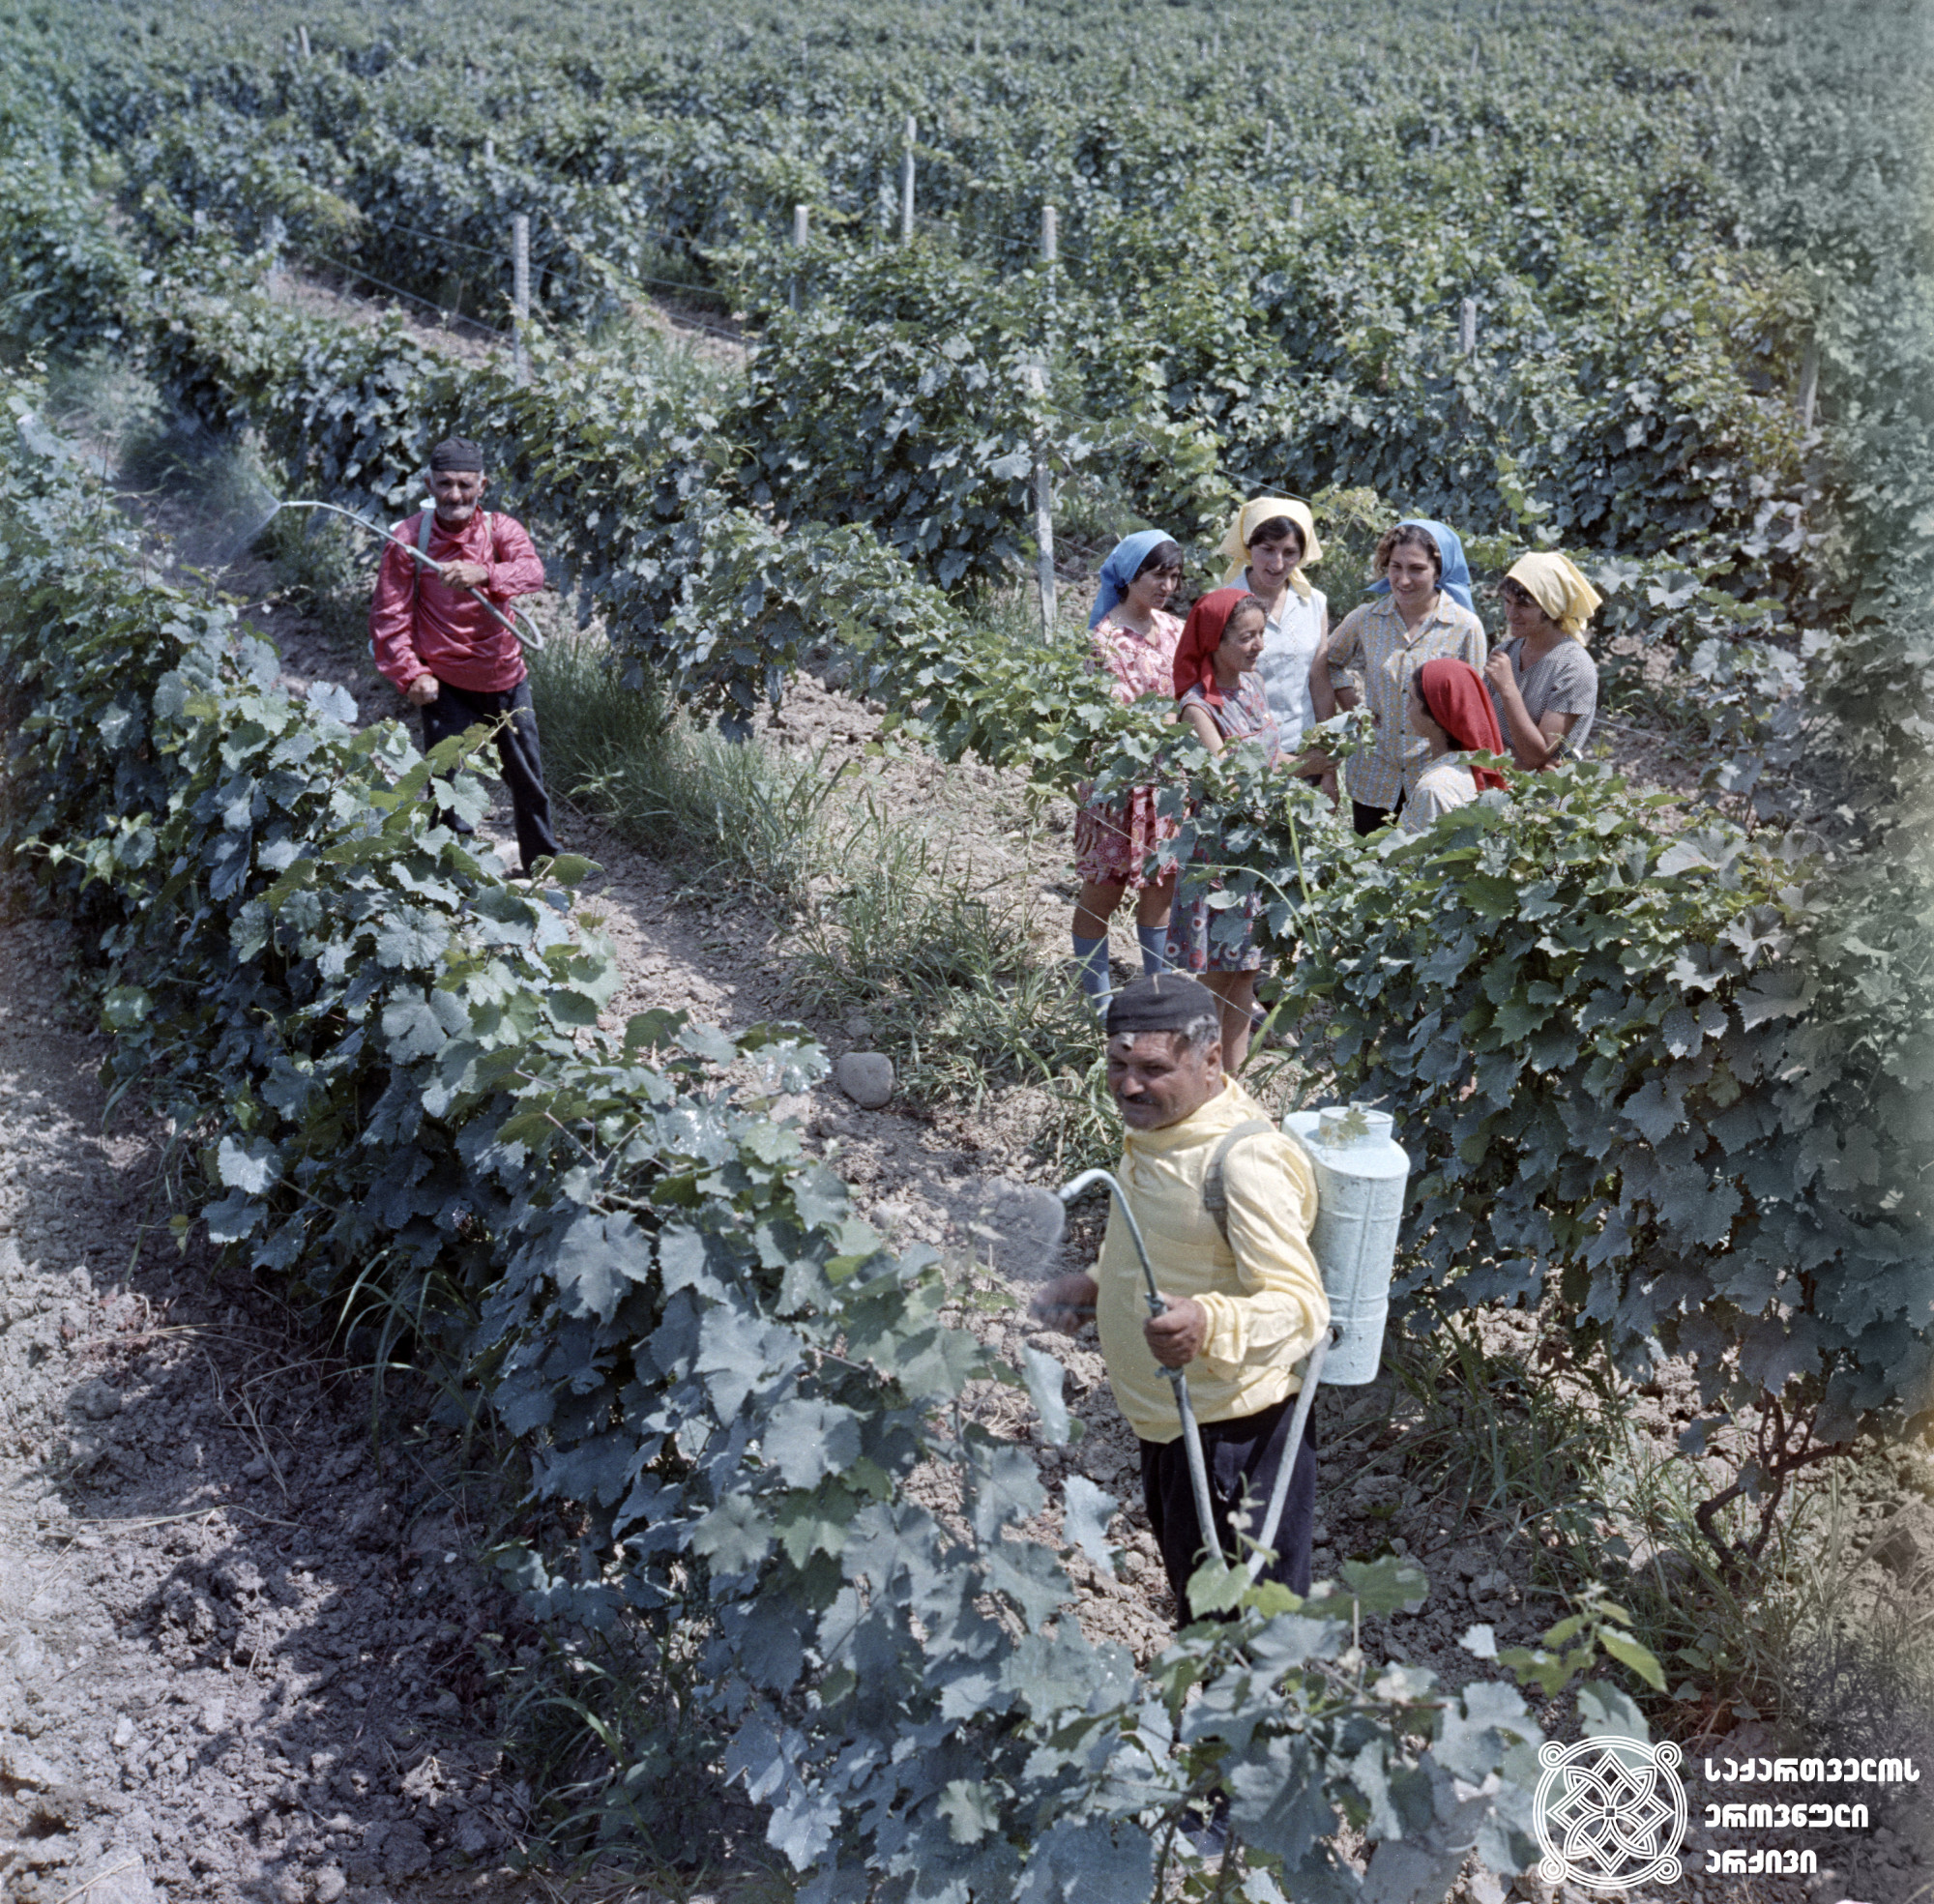 ვაზის შეწამვლა სოფელ მარანში <br>
ფოტო: ანატოლი რუხაძე <br>
1975 წელი
<br>
Spraying of the vineyard at village Marani <br>
Photo by Anatoli Rukhadze <br>
1975